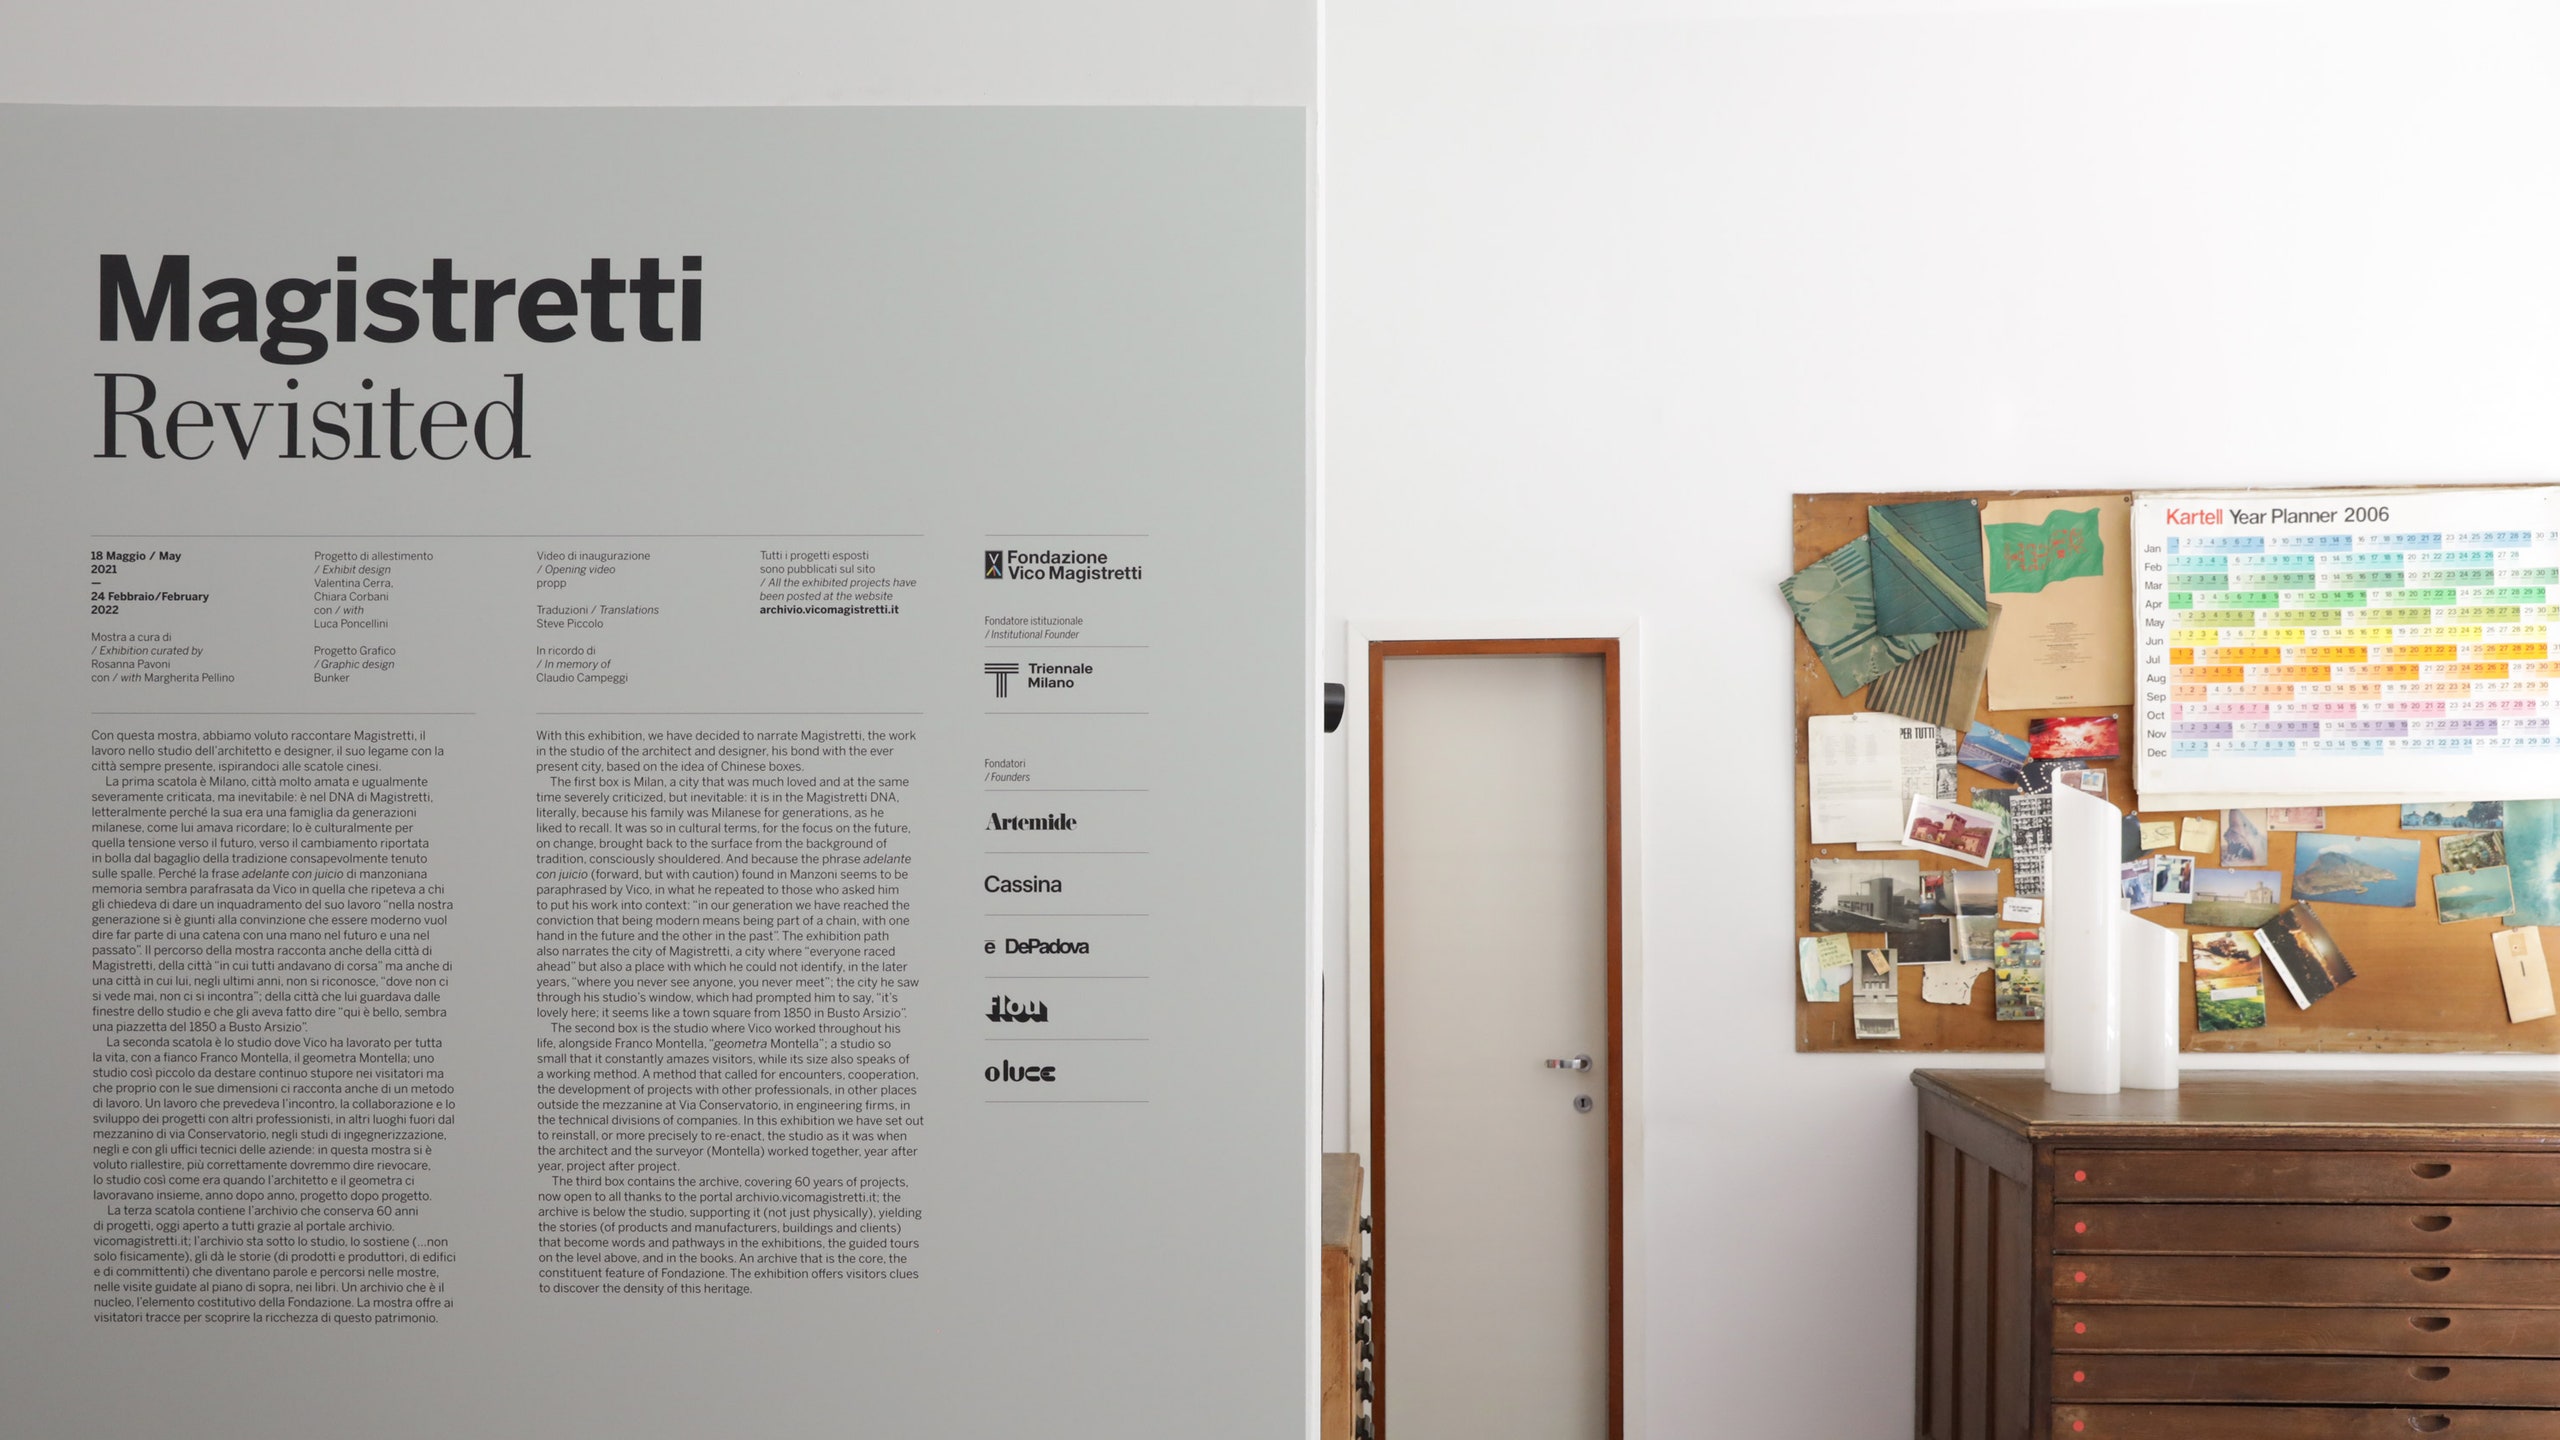 Выставка о Вико Маджистретти в Милане